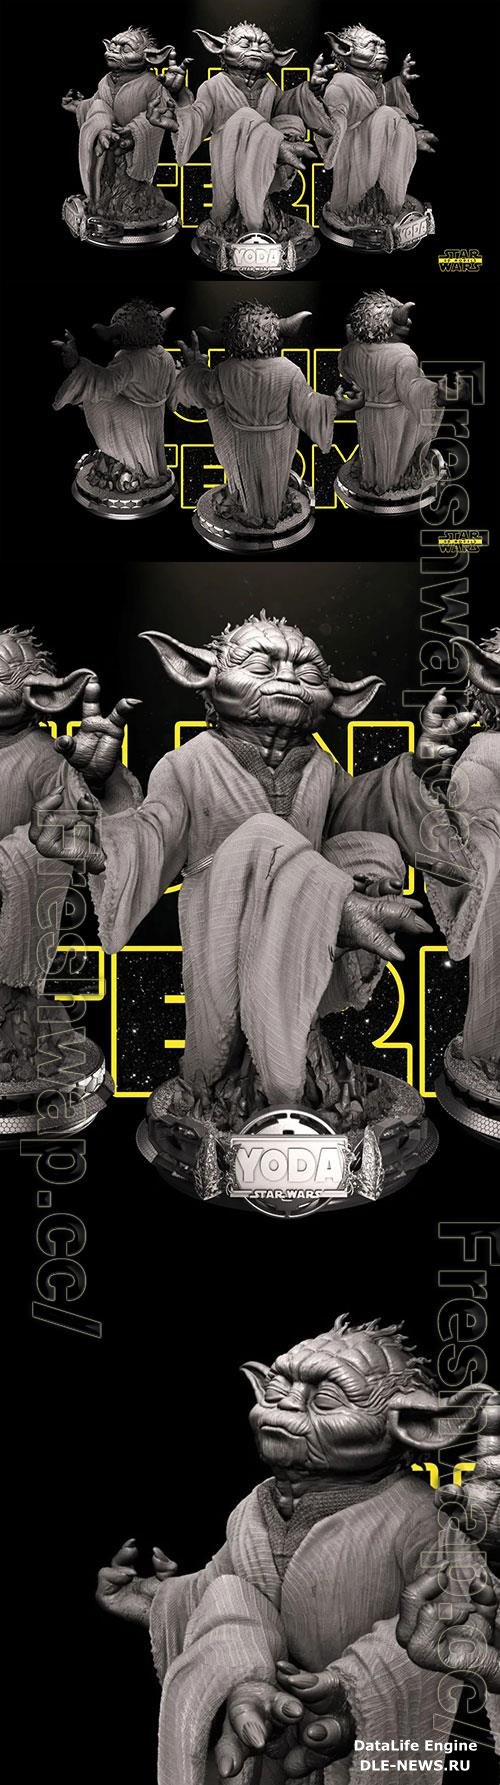 Yoda - Star Wars 3D Print